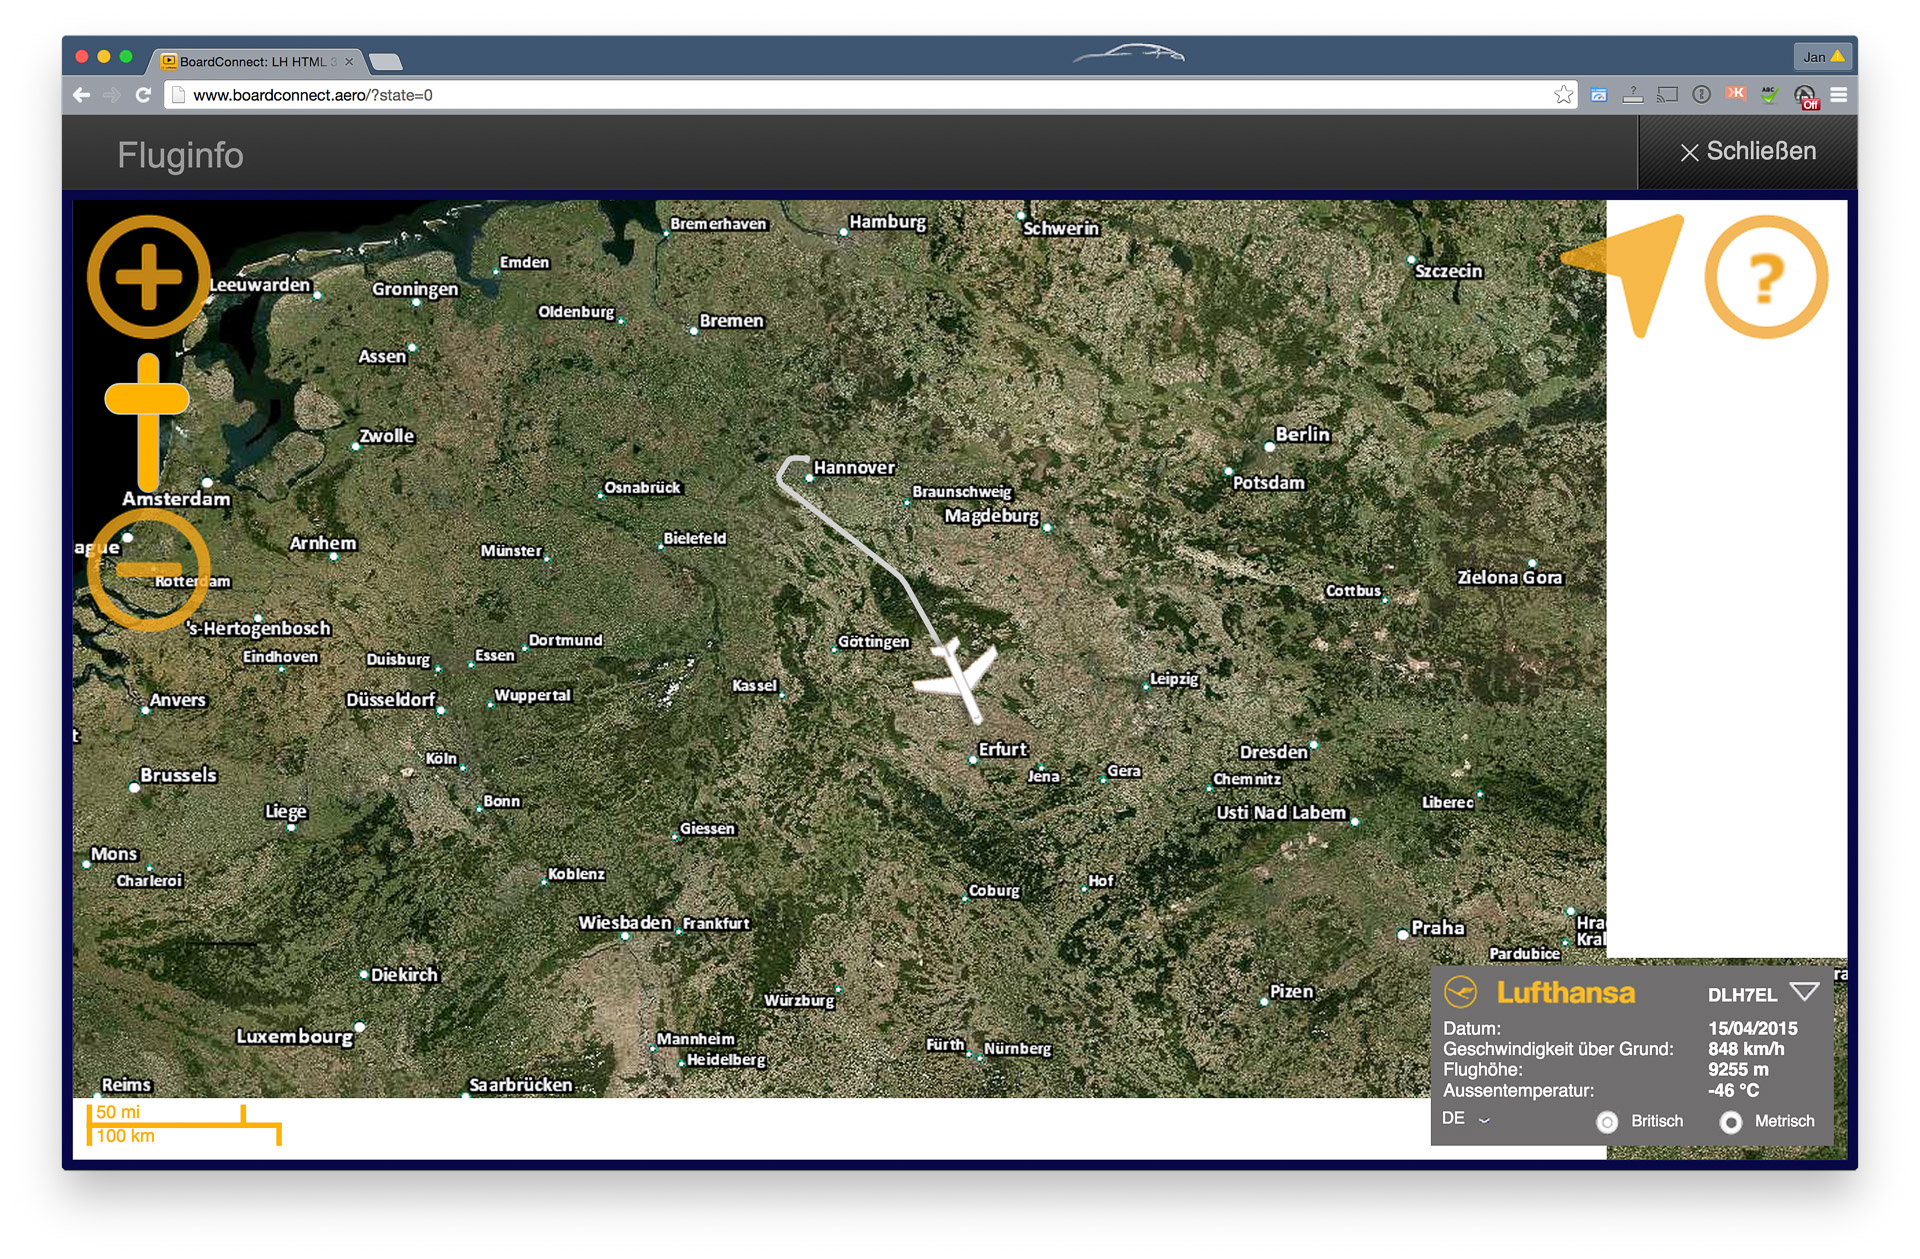 Lufthansa-Infliegt-Entertainment-WLAN-Mittelstrecke-Fluginfo.jpg